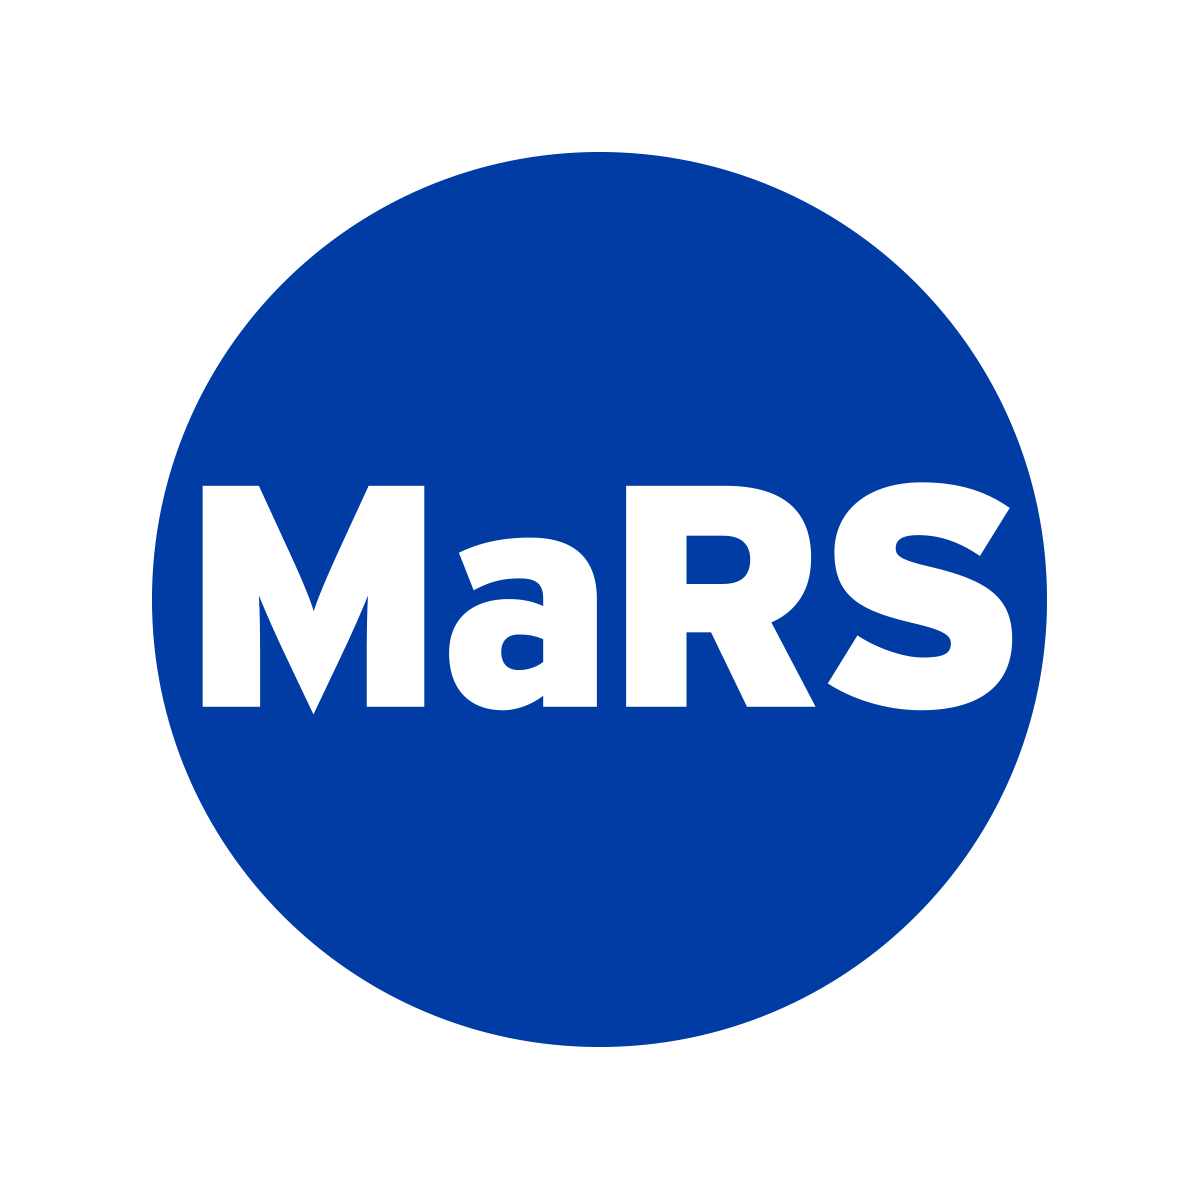 MaRS